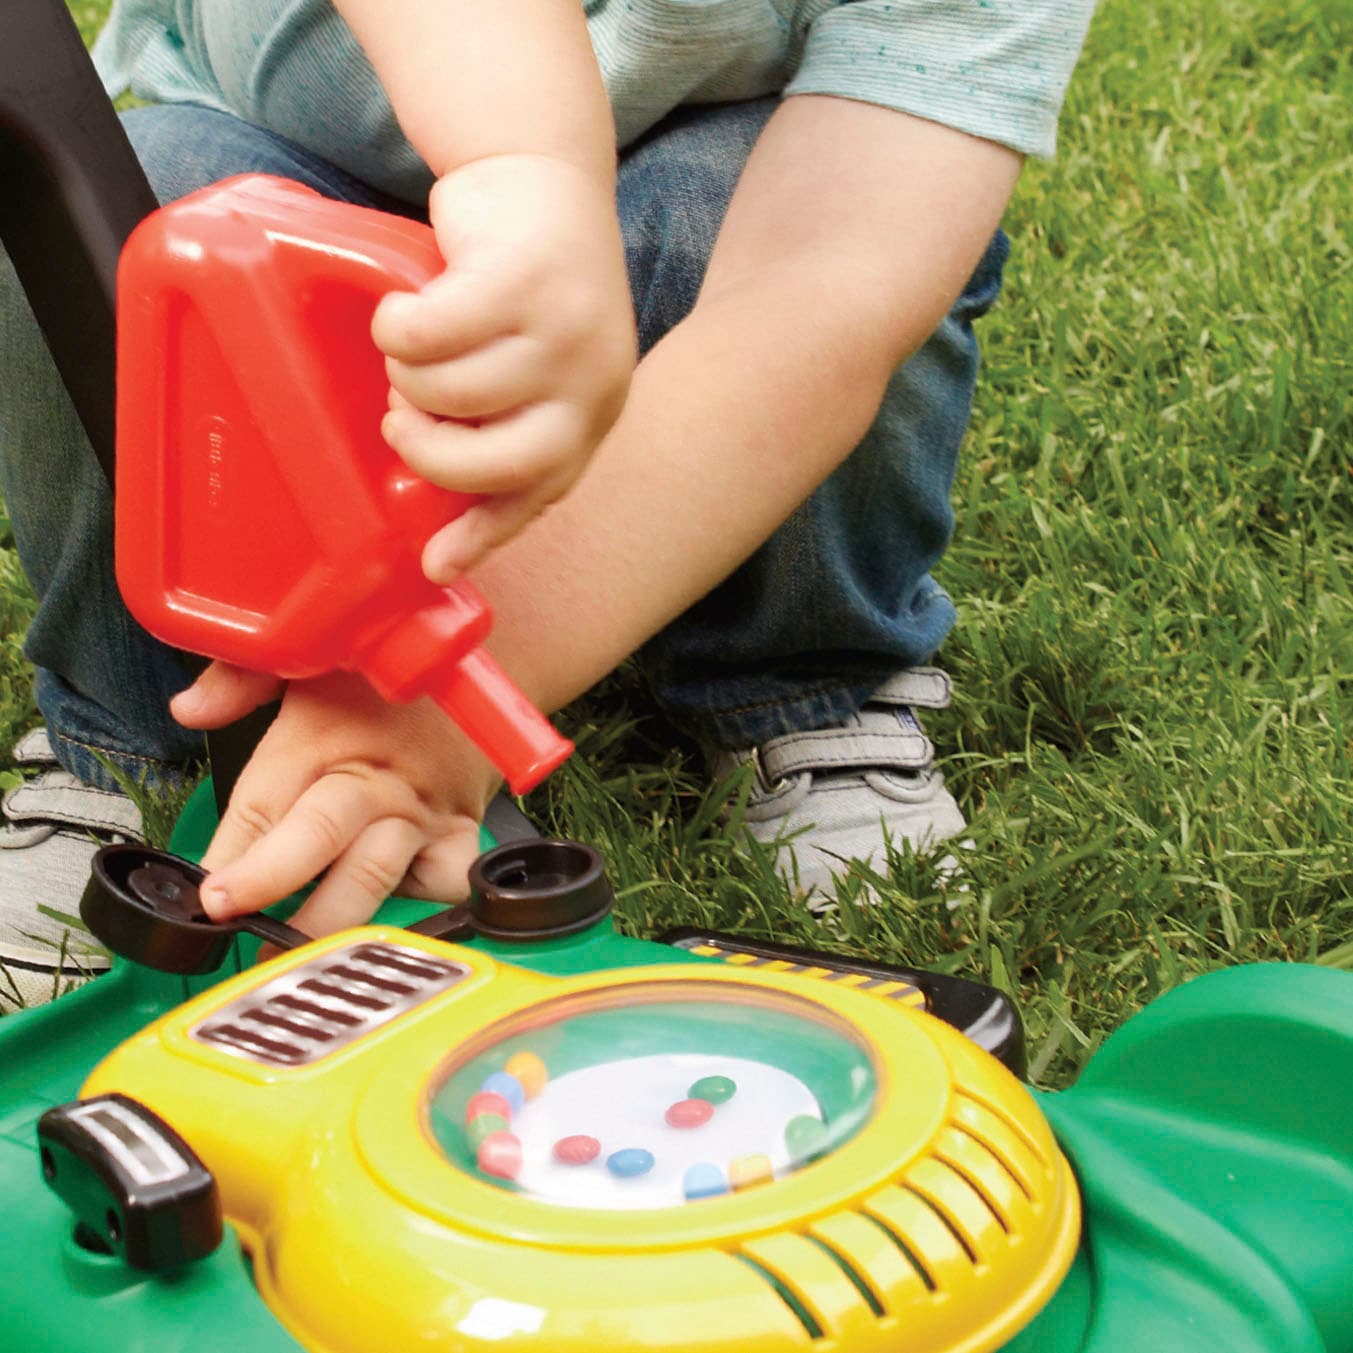 Little Tikes® Kinder-Rasenmäher »Gas 'n Go Mower«, mit Anlass- und Motorgeräuschen